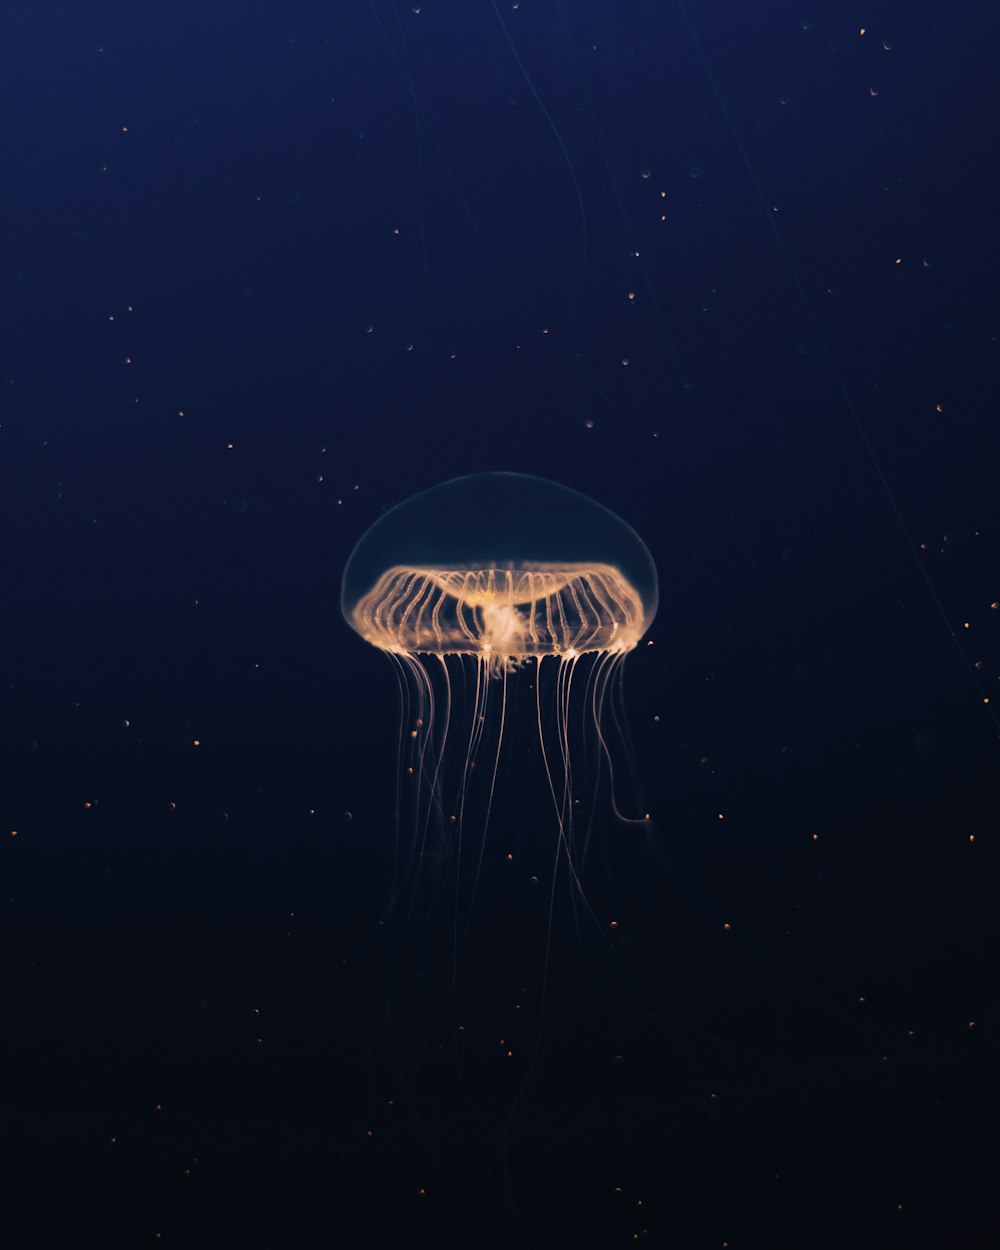 una medusa flotando en el agua por la noche